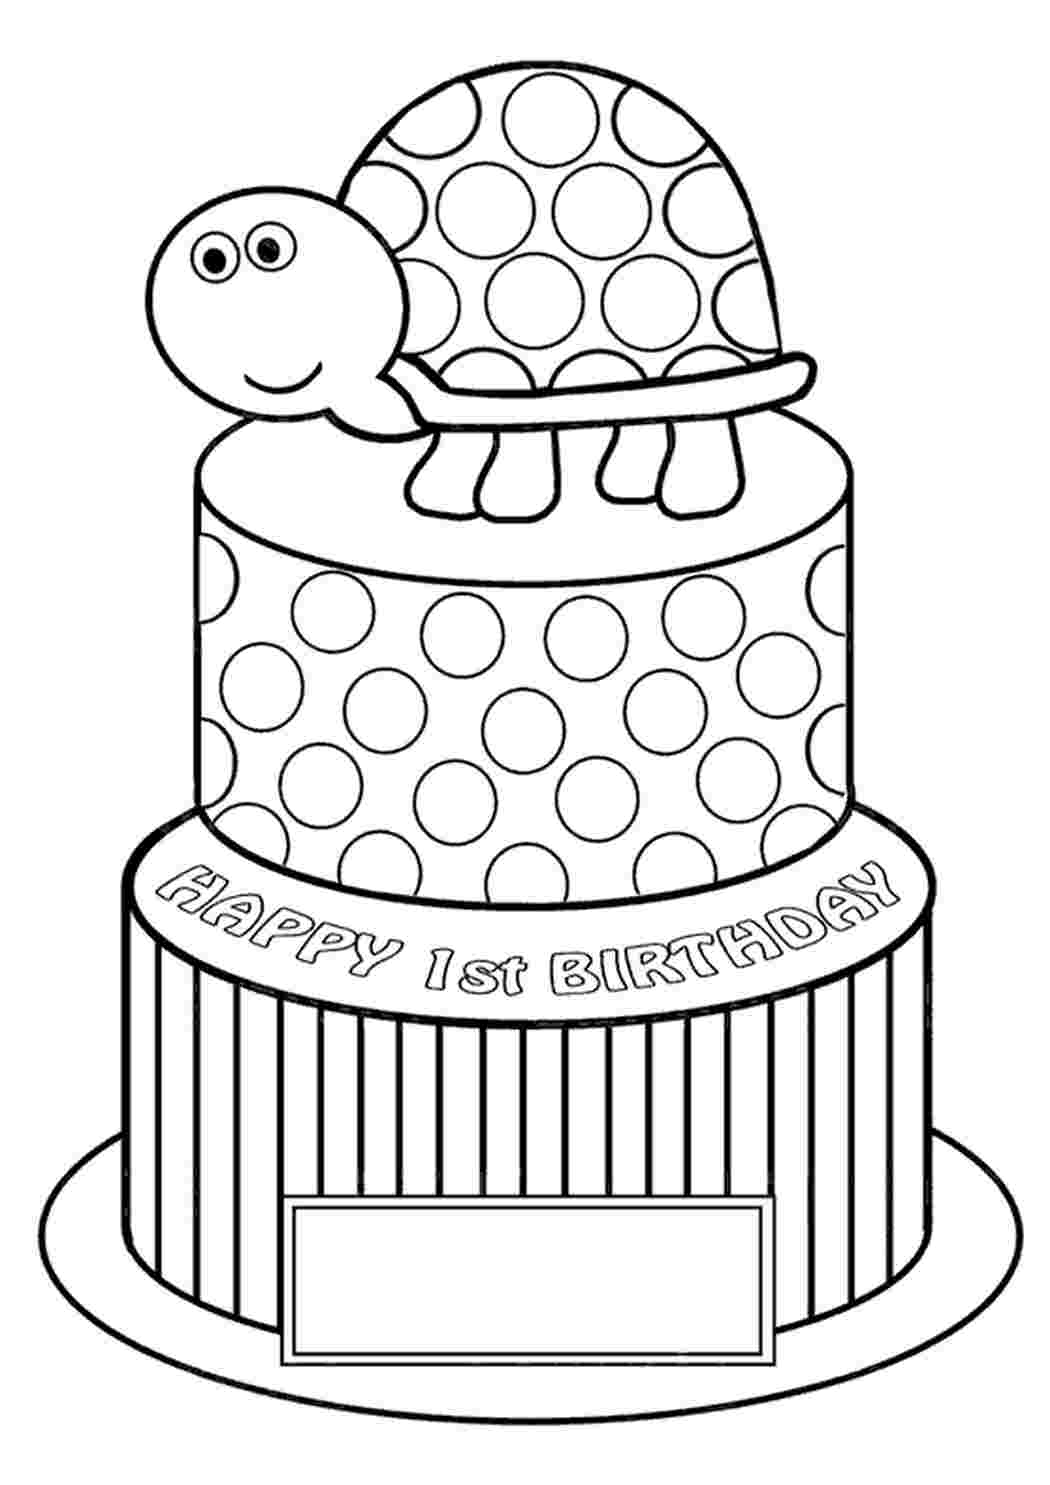 С днем рождения на торт для печати. Тортик. Раскраска. Раскраска торт. Тортик раскраска для детей. Раскраска для малышей тортик.